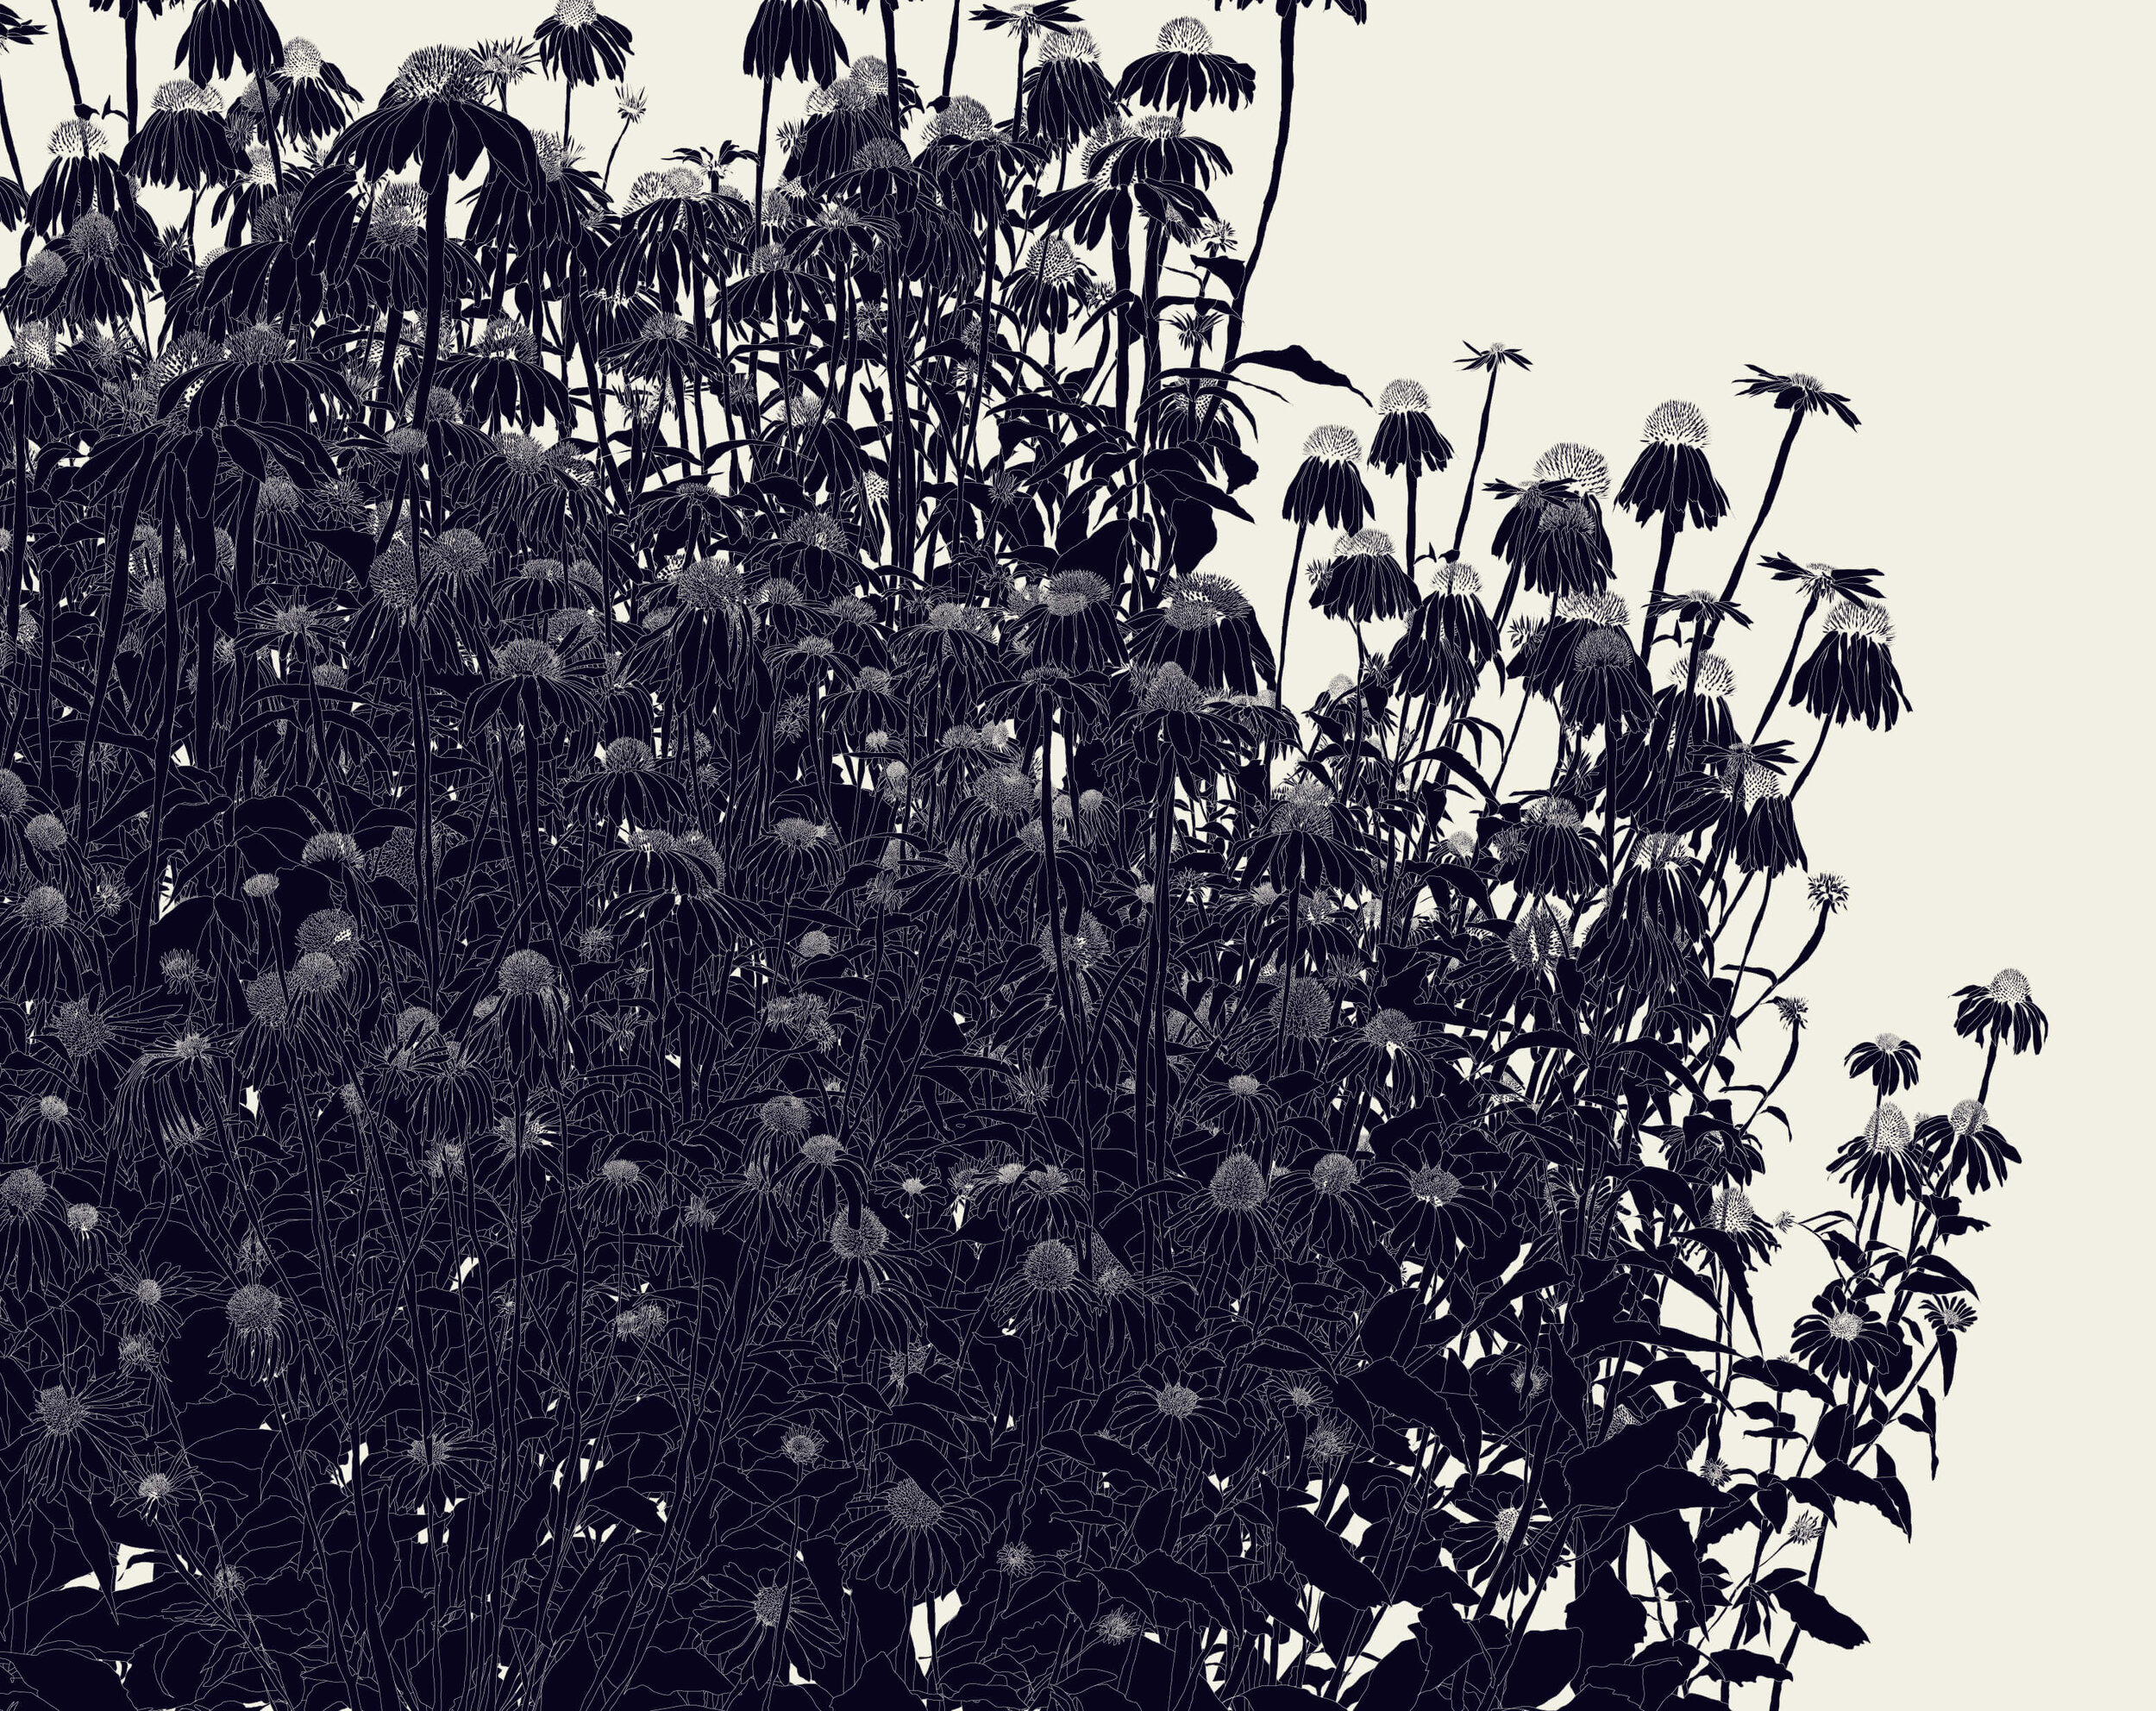 39º 18’ 53.5“N, 106º 58’ 55“W (black echinacea)